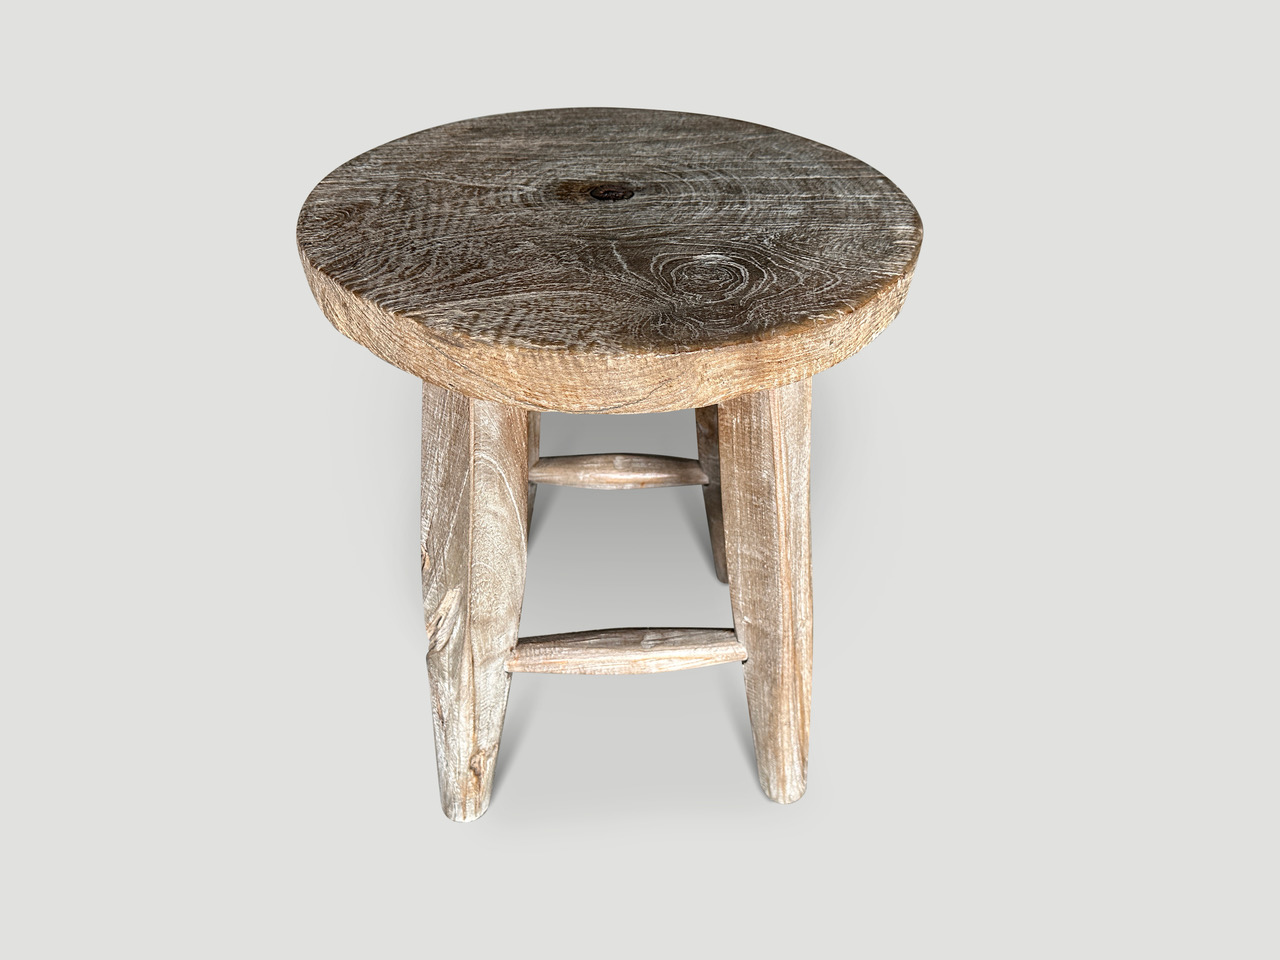 minimalist side table or stool